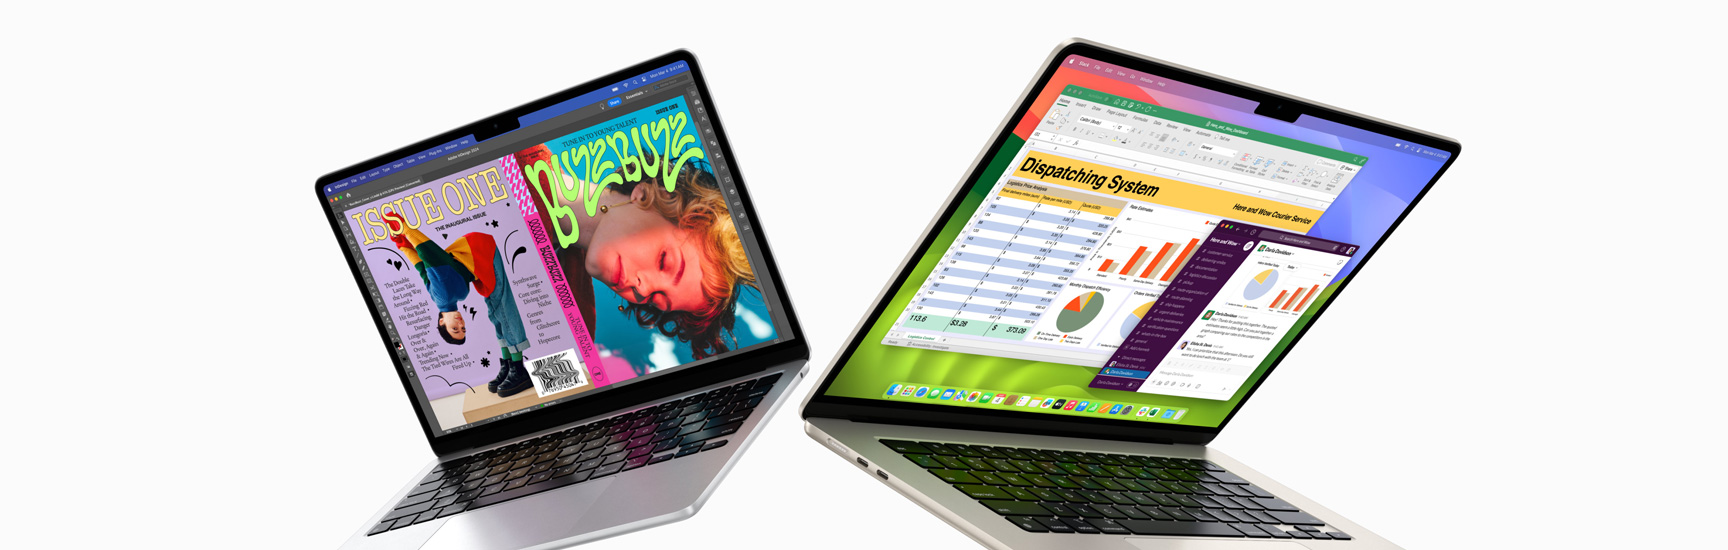 Solda kısmen açık 13 inç MacBook Air ve sağda 15 inç MacBook Air. 13 inç ekranda In Design ile oluşturulan renkli fanzin kapağı gösteriliyor. 15 inç ekranda Microsoft Excel ve Slack gösteriliyor.